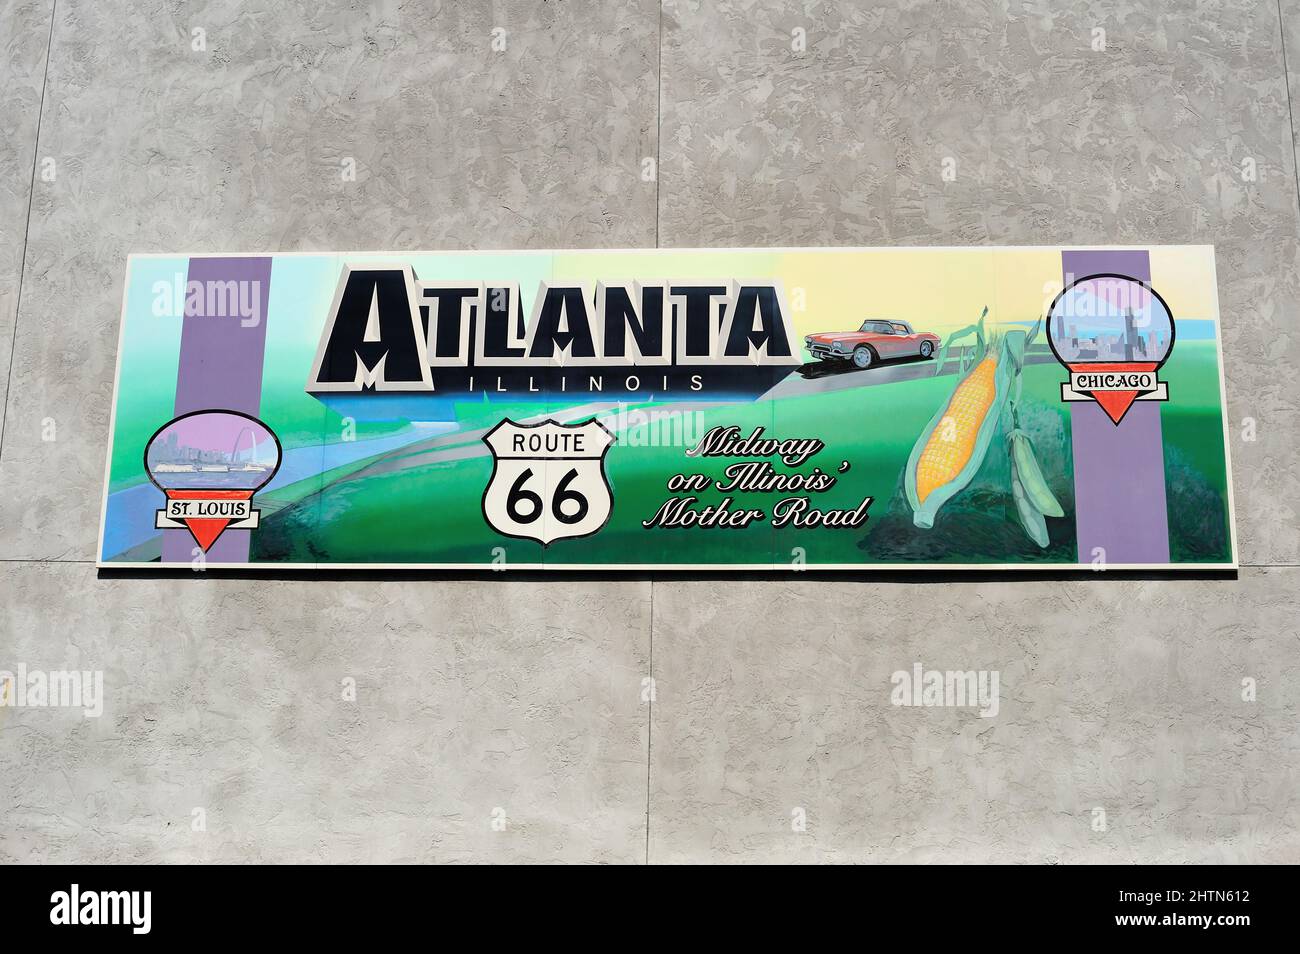 Atlanta, Illinois, Stati Uniti. In un collegamento con la strada Madre, U.S. Route 66, un cartello sul lato di un edificio rende omaggio alla famosa strada. Foto Stock